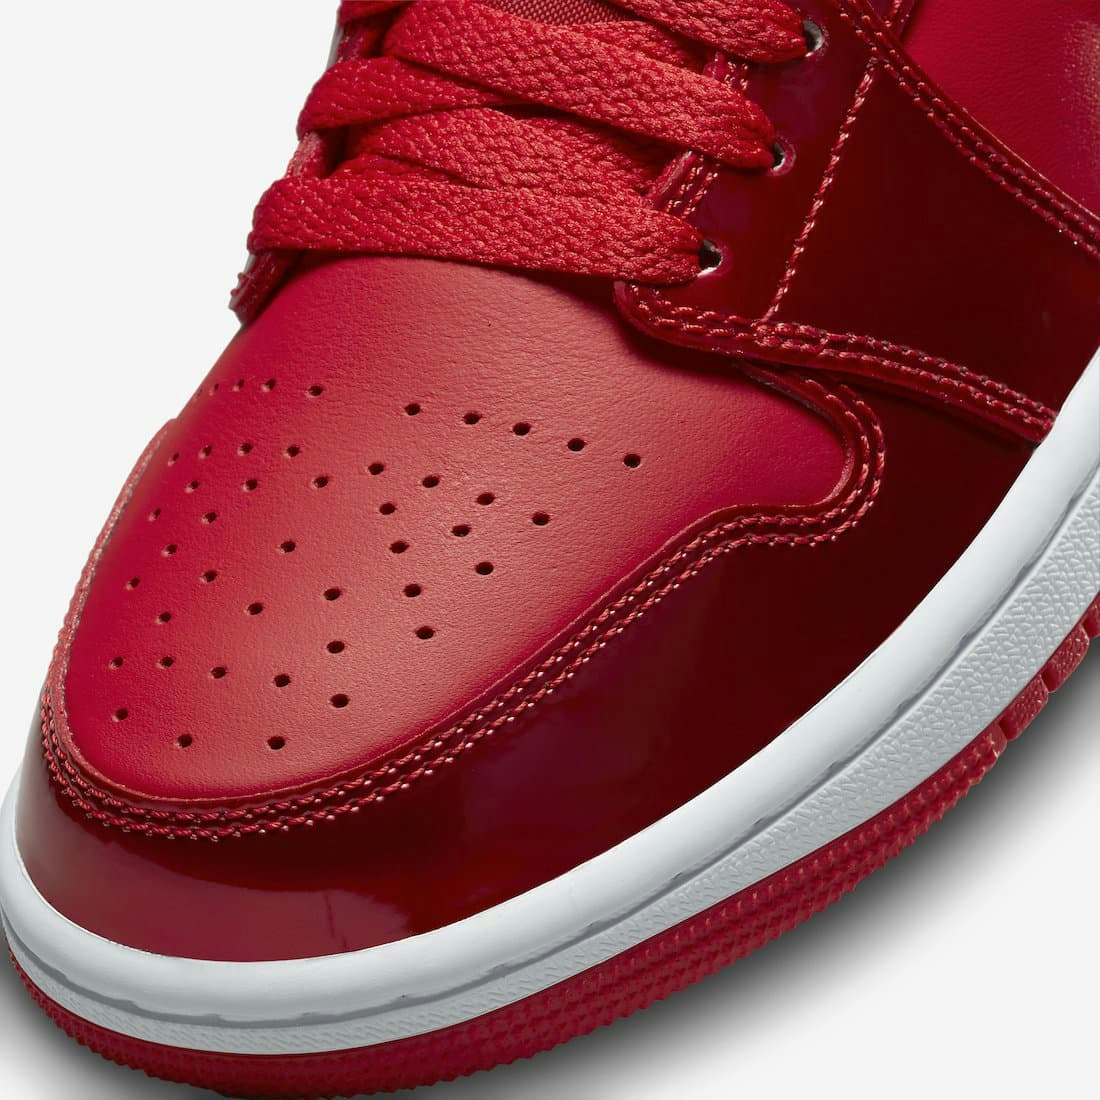 Air Jordan 1 Mid SE “Red Pomegranate”